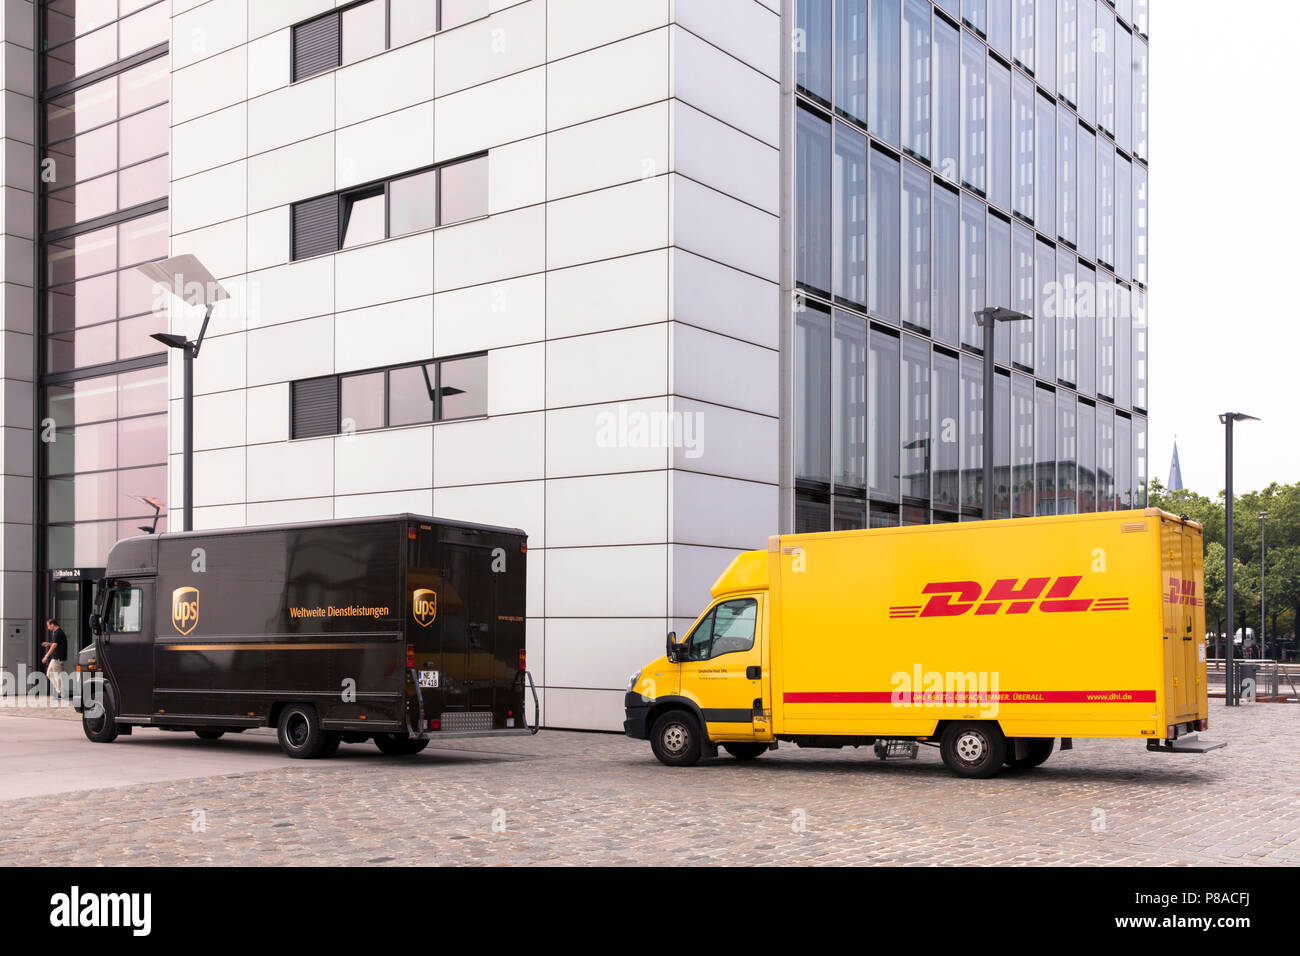 Servicio de paquetería DHL y UPS parcel service coches delante de la grúa en casa Sur Rheinau Harbour, en Colonia, Alemania. DHL und UPS Fahrzeuge vor dem Kranh Foto de stock